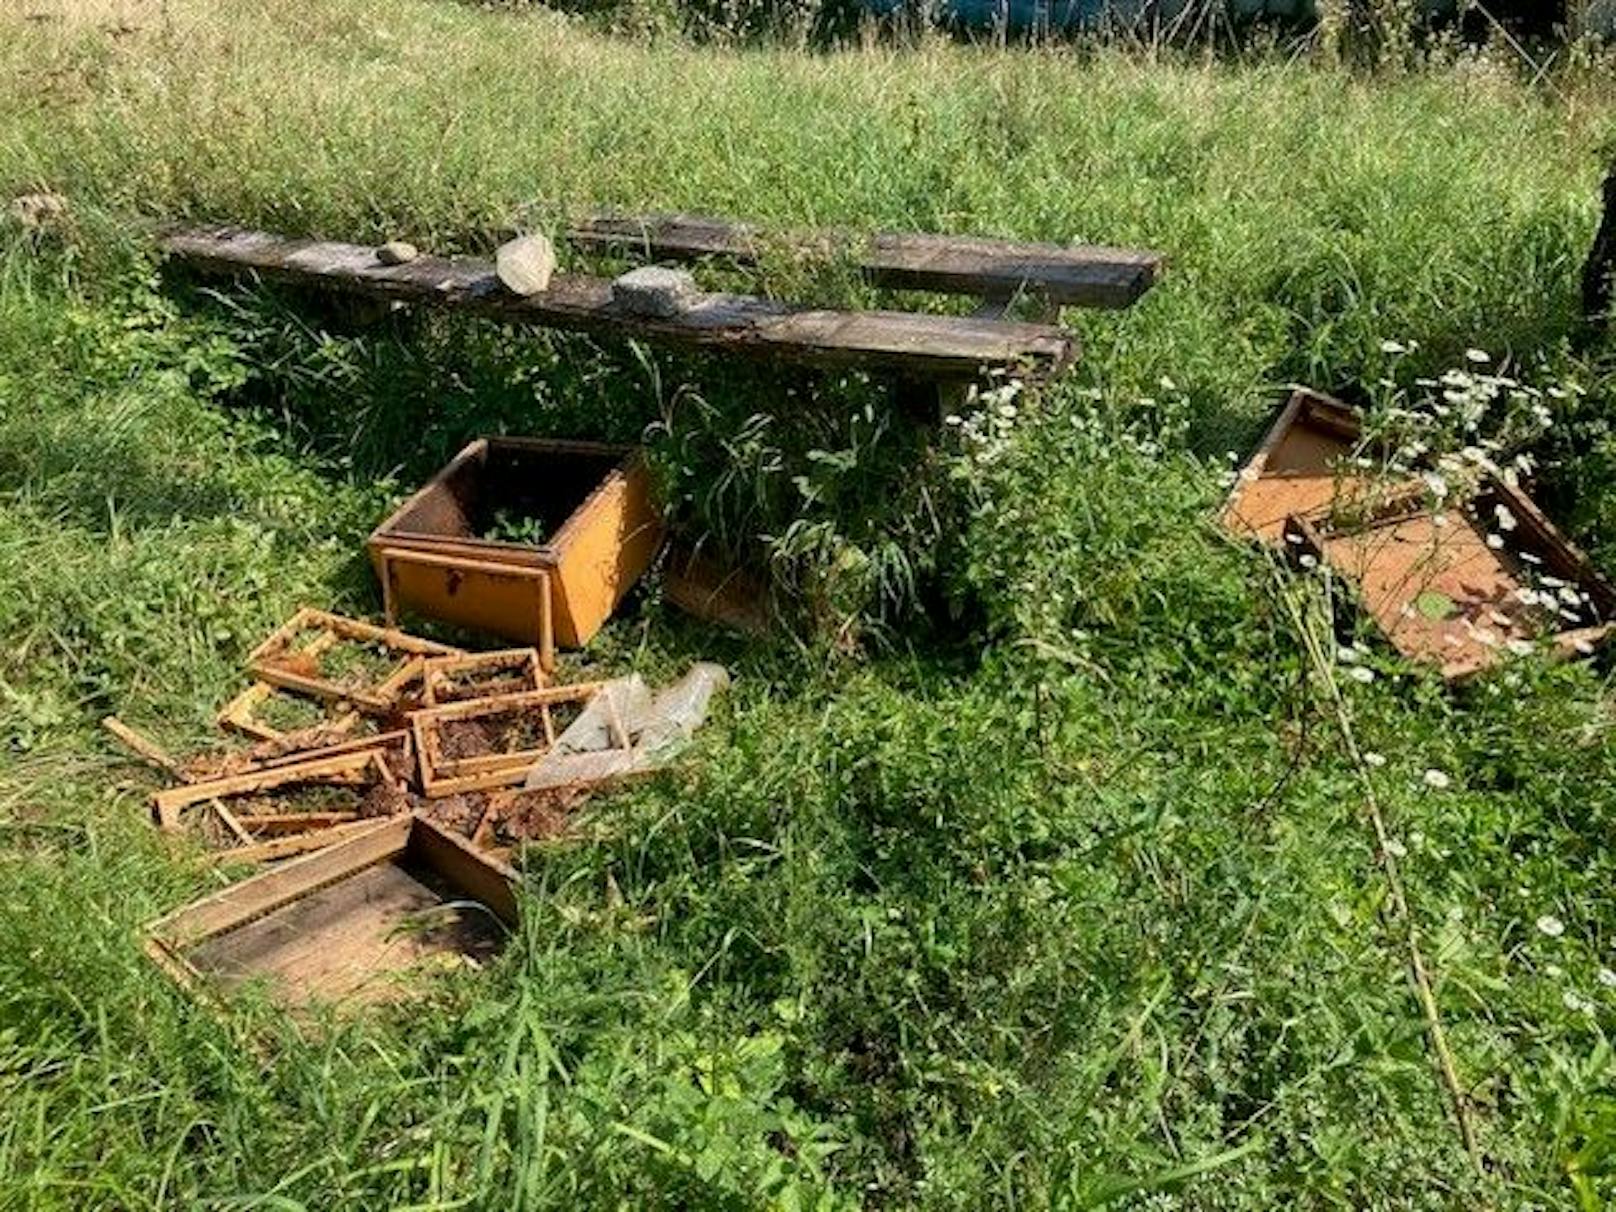 Serientäter! Bär plünderte Bienenstöcke in Kärnten